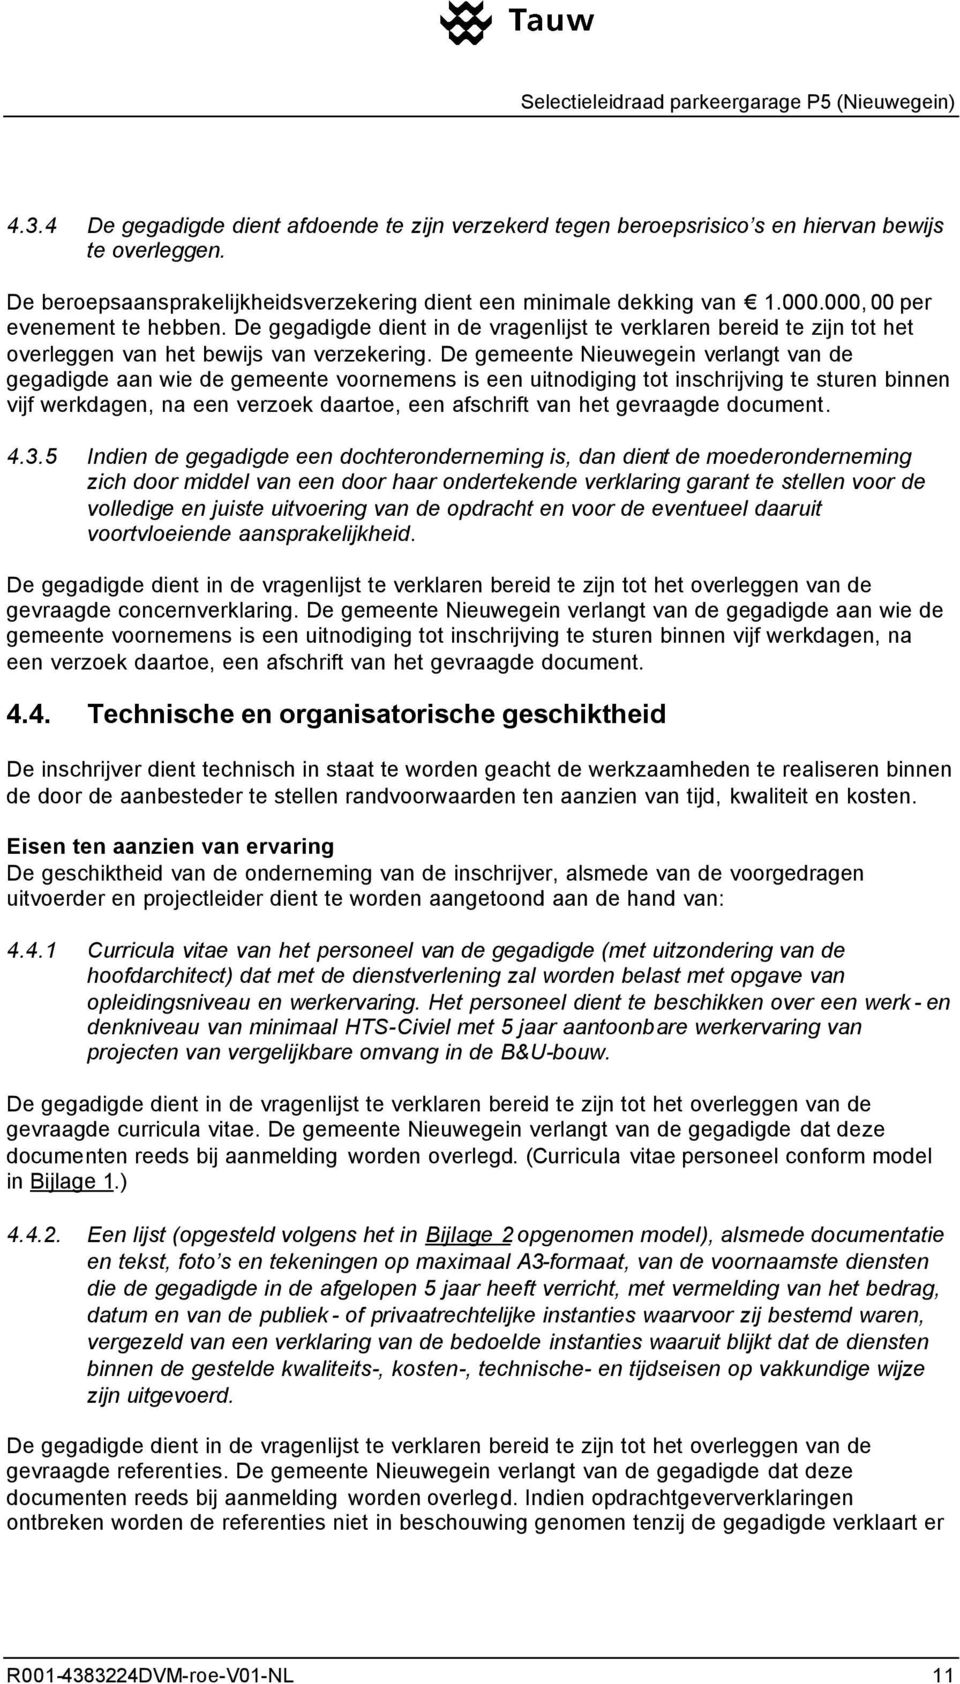 De gemeente Nieuwegein verlangt van de gegadigde aan wie de gemeente voornemens is een uitnodiging tot inschrijving te sturen binnen vijf werkdagen, na een verzoek daartoe, een afschrift van het